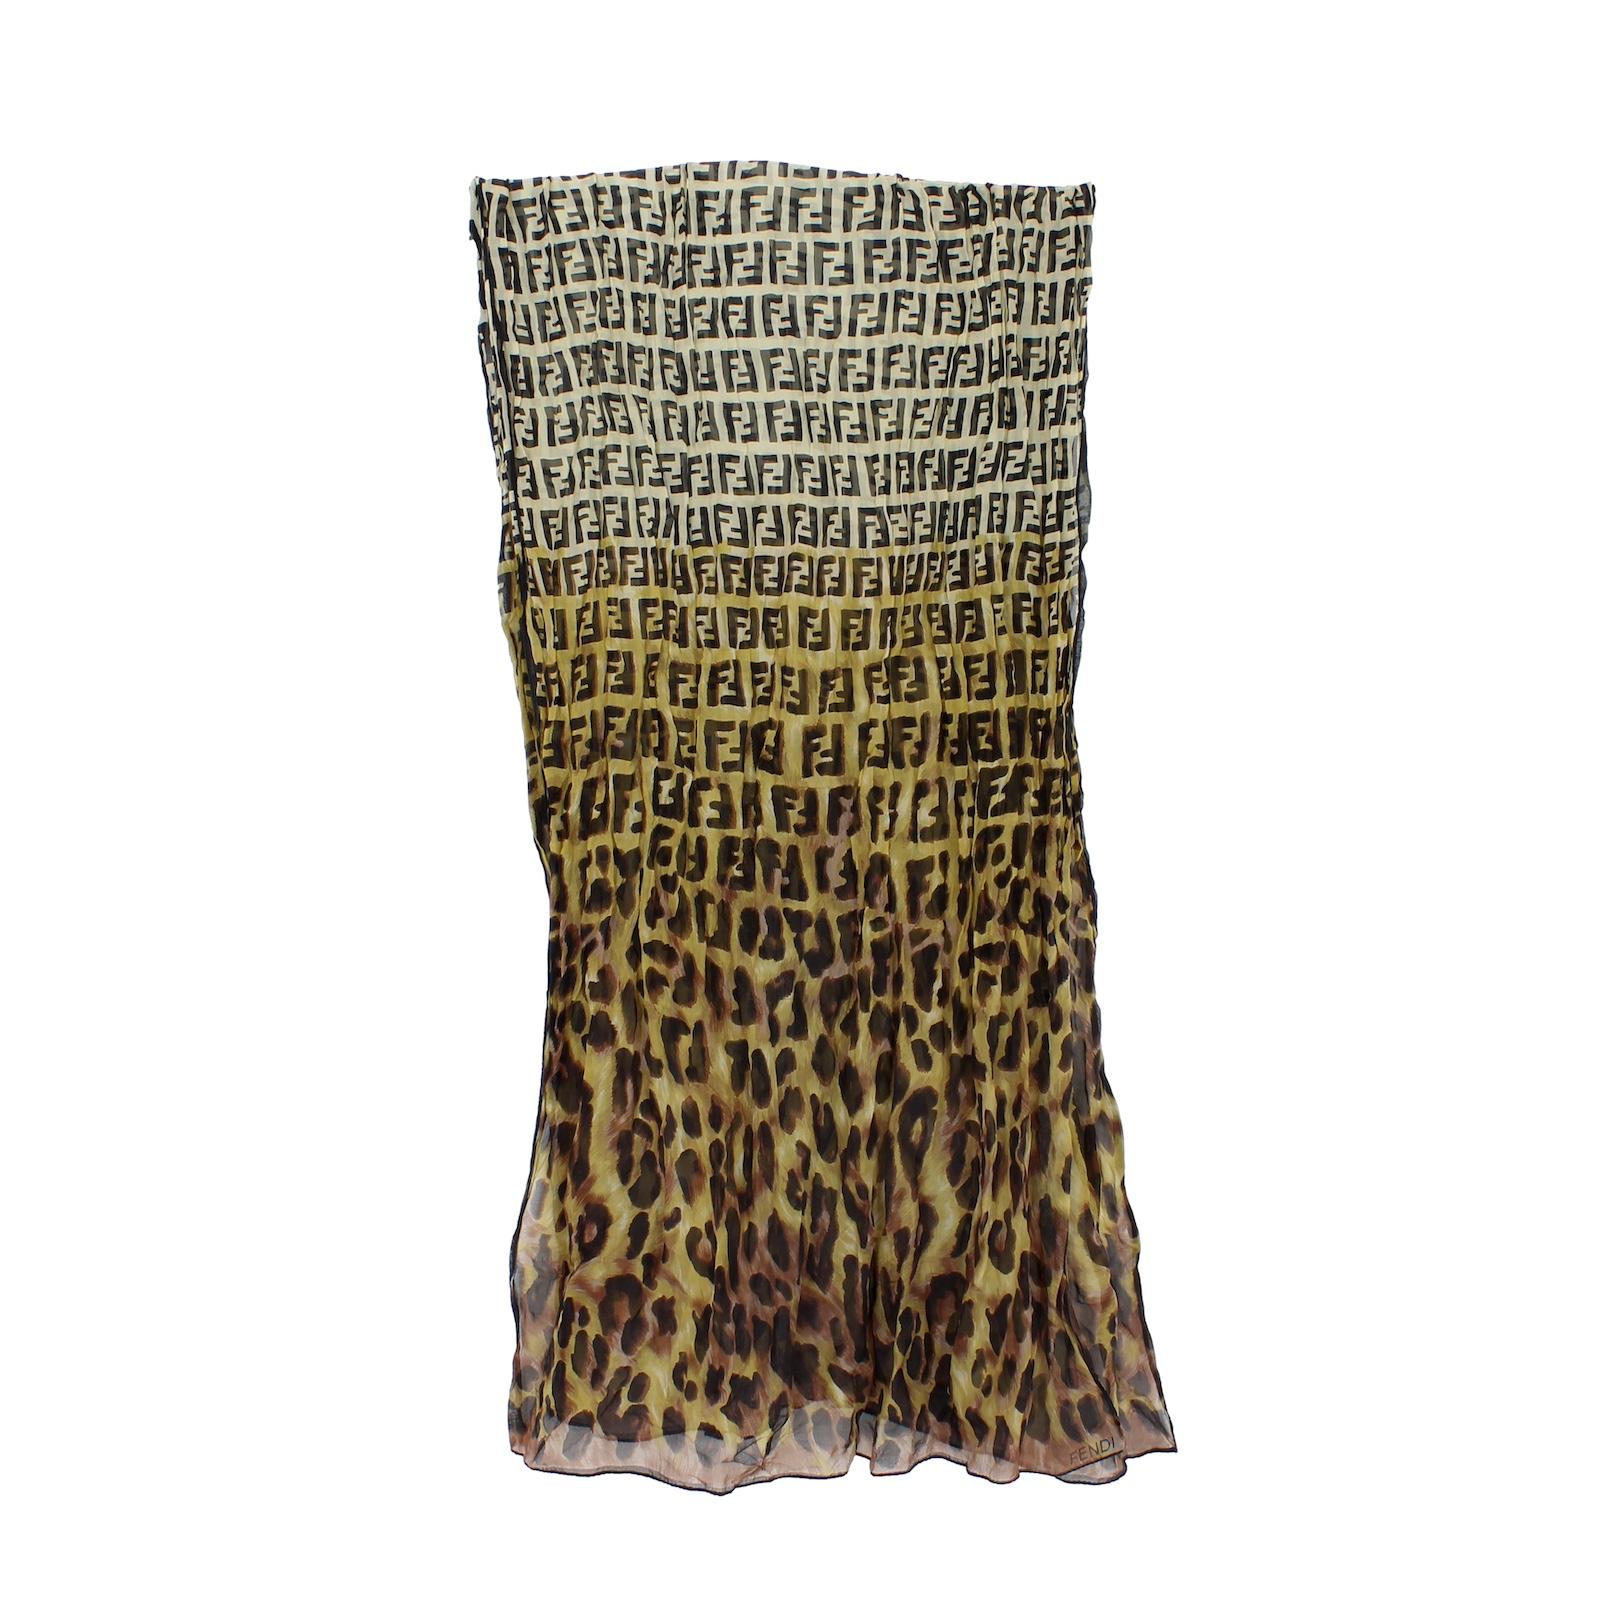 Fendi Zucca animalier scarf 2000s. Grande étole avec imprimé léopard et monogramme, couleur marron et beige. 100% soie. Fabriqué en Italie. Étiquette manquante.

Dimensions : 170 x 60 cm


